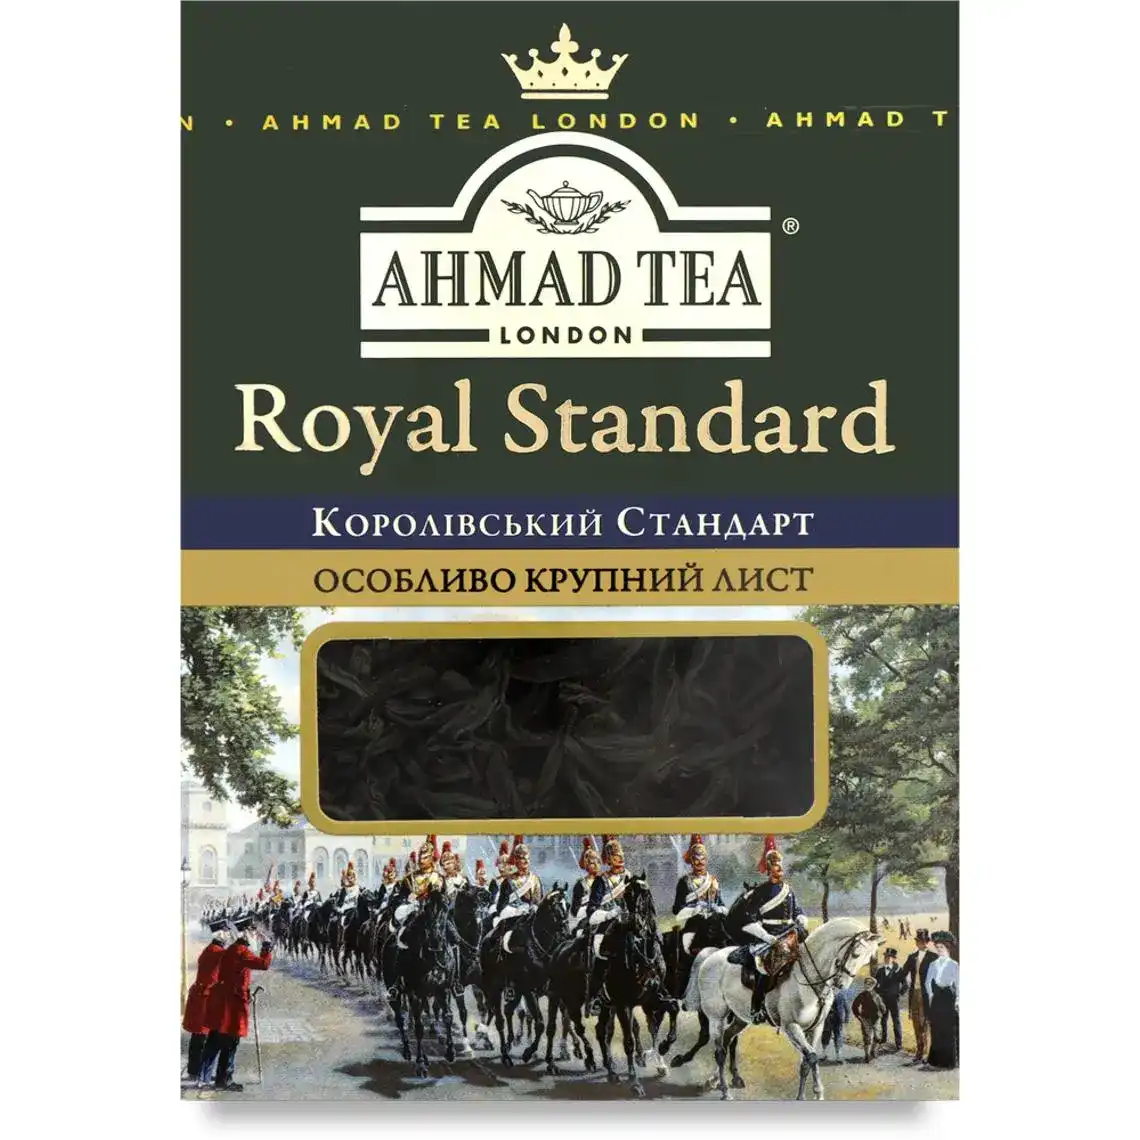 Чай чорний крупнолистовий Royal Standard Ahmad Tea к/у 50г